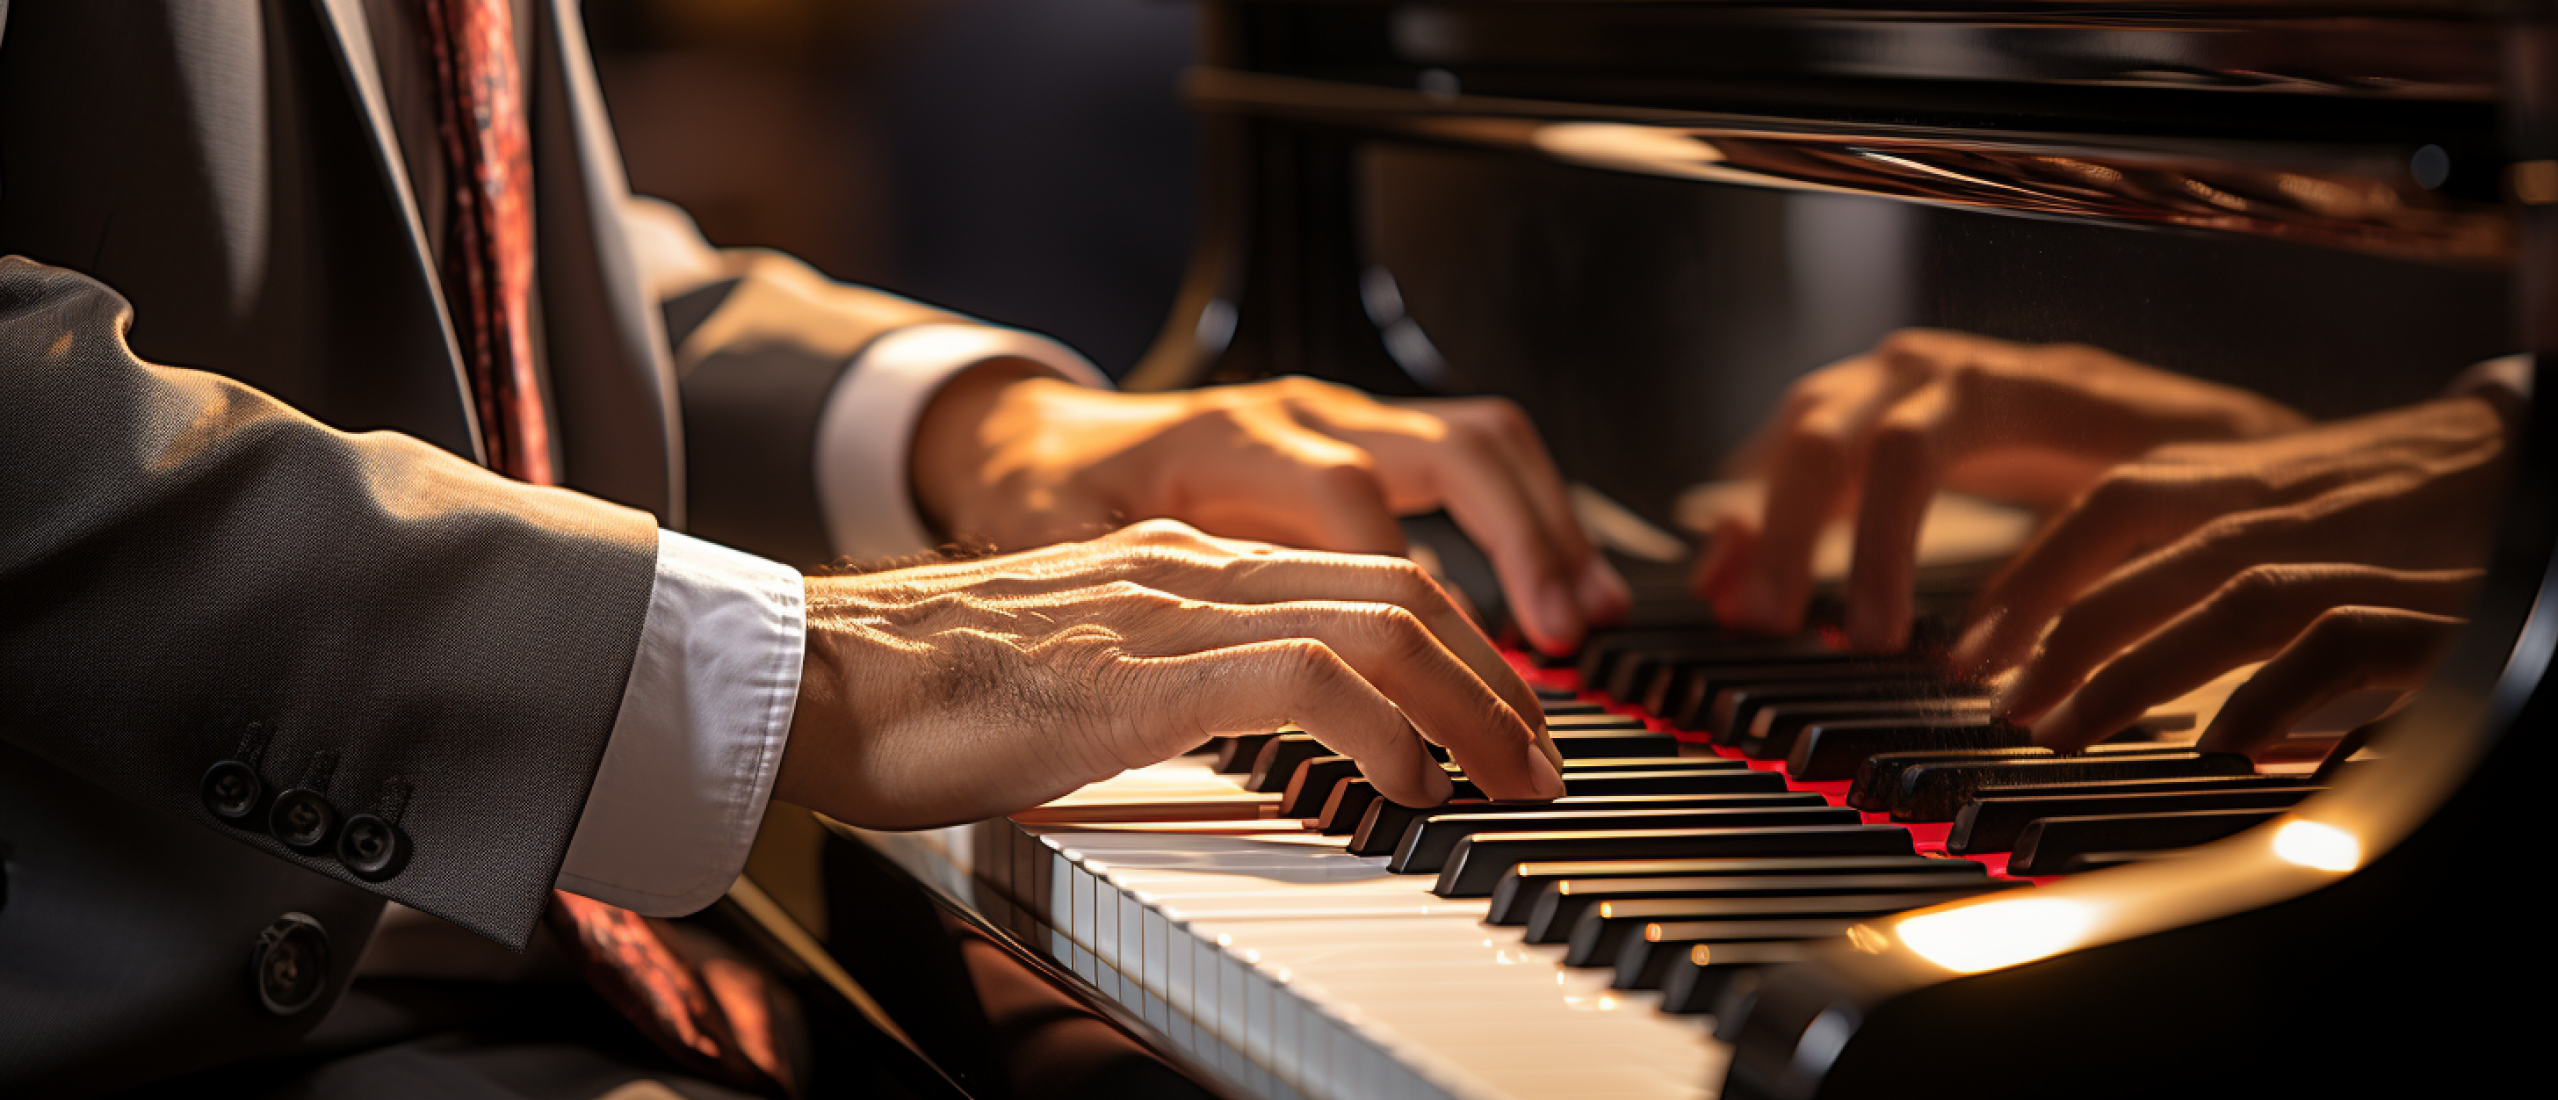 Voordelen van piano spelen: waarom het spelen van piano goed voor je is